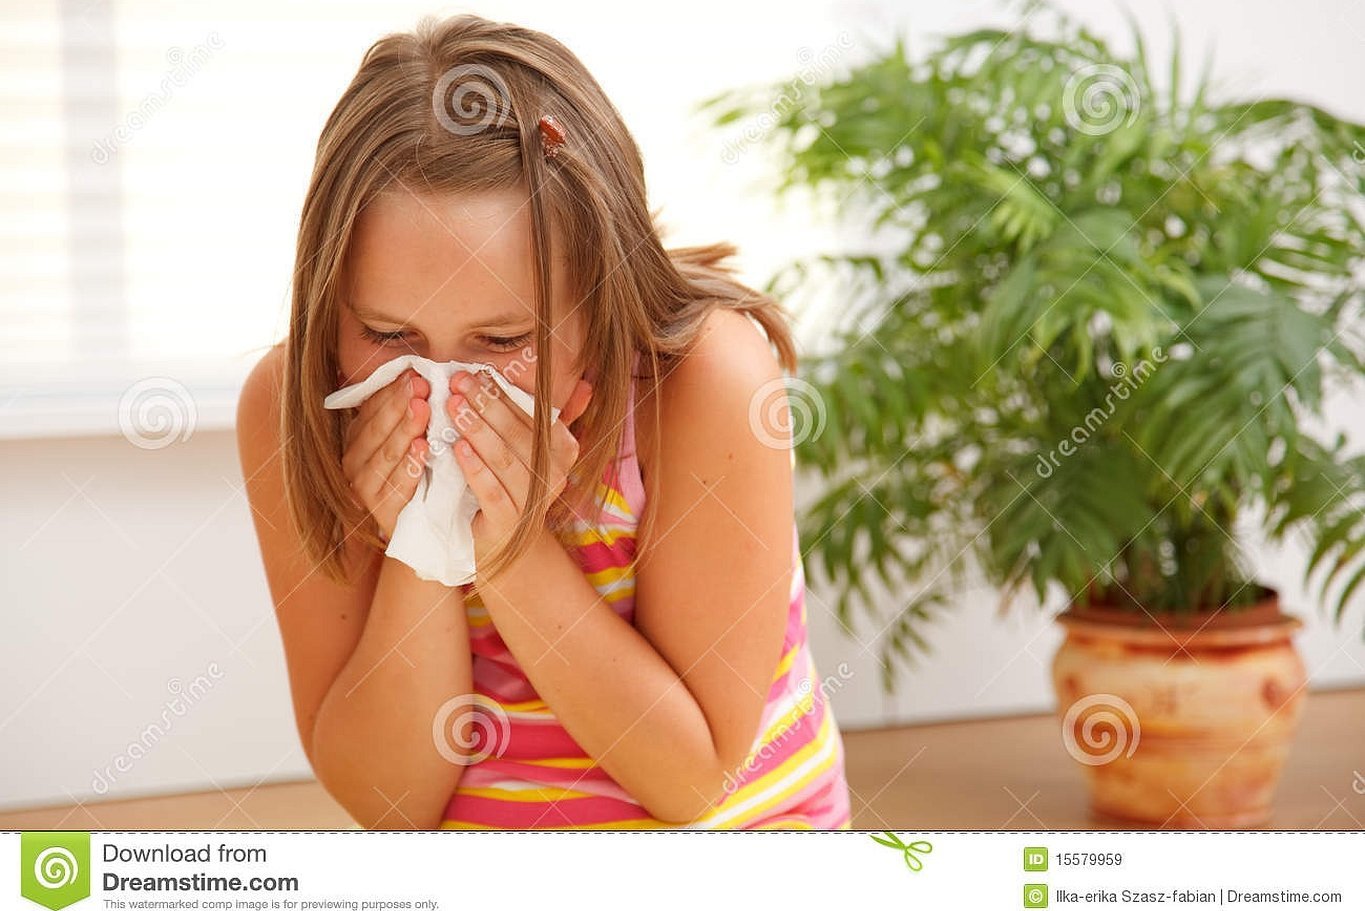 Аллергия на домашнюю пыль